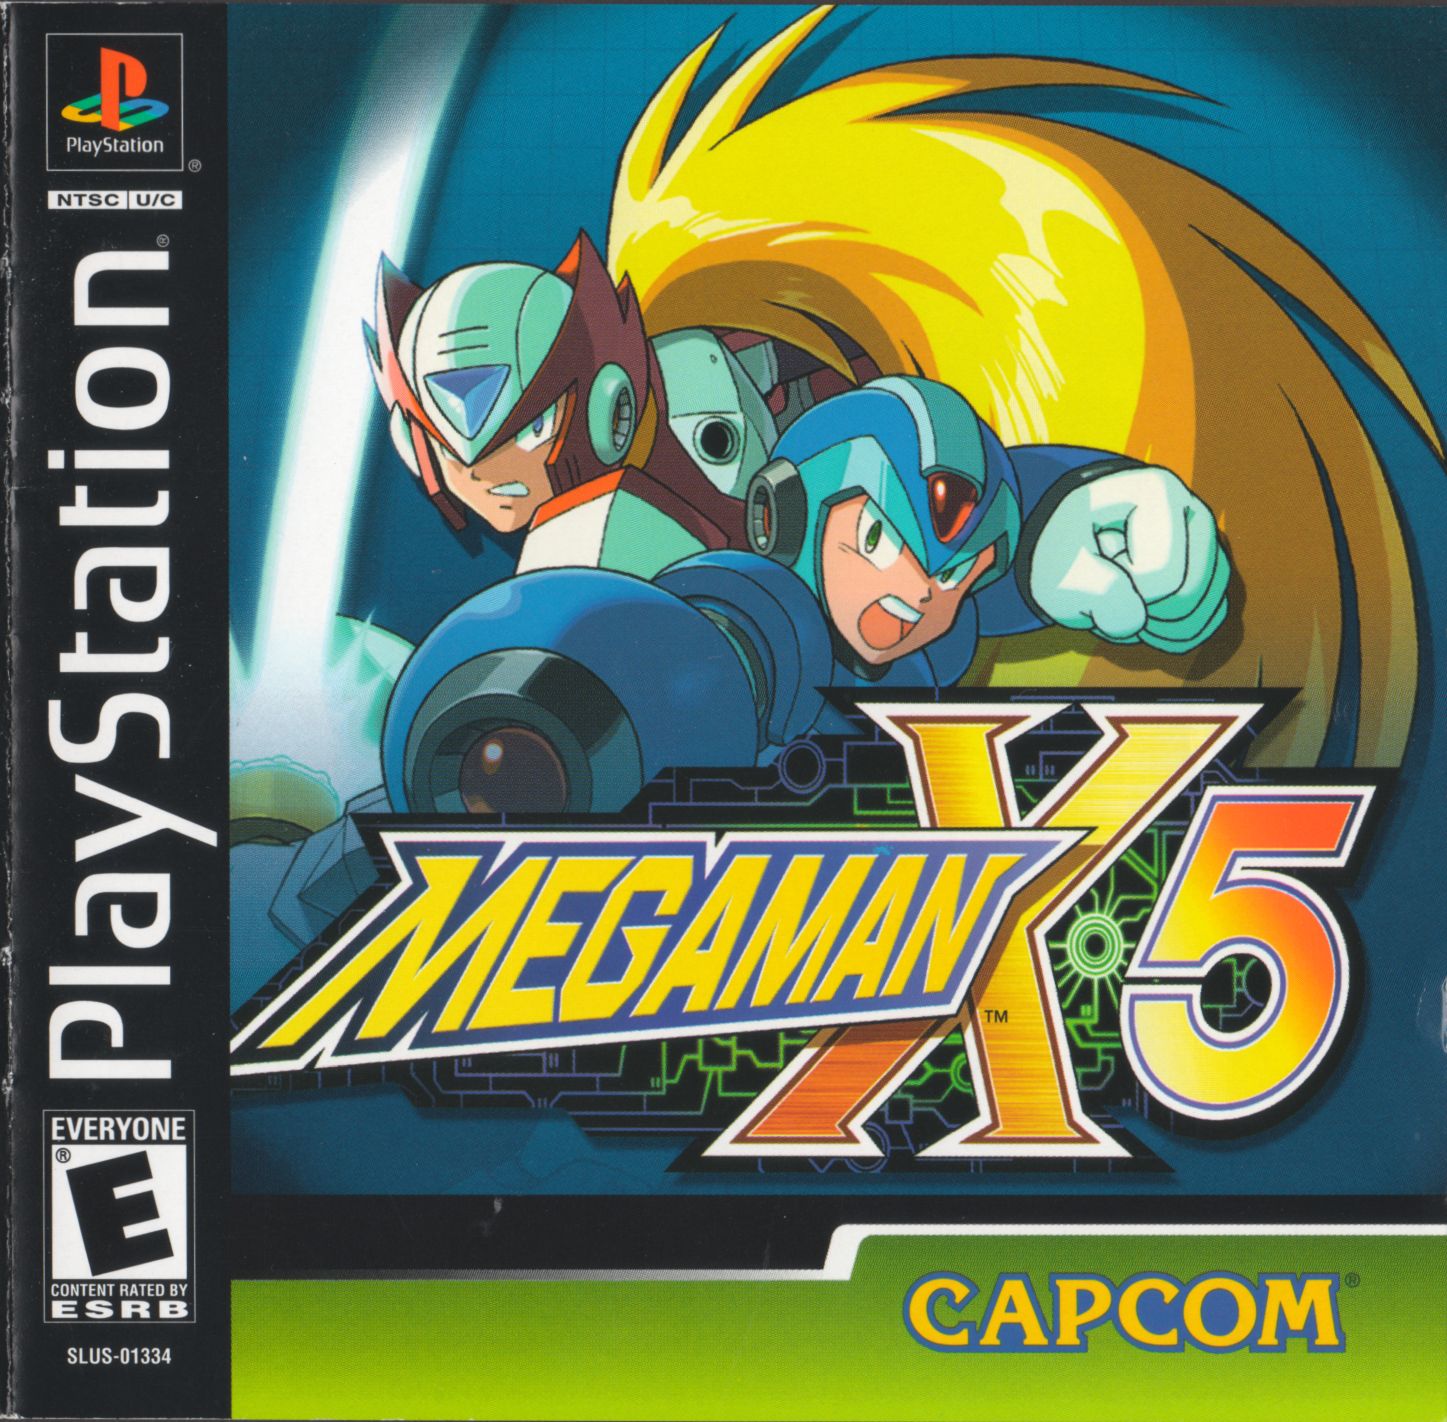 megaman-x5-psx-cover